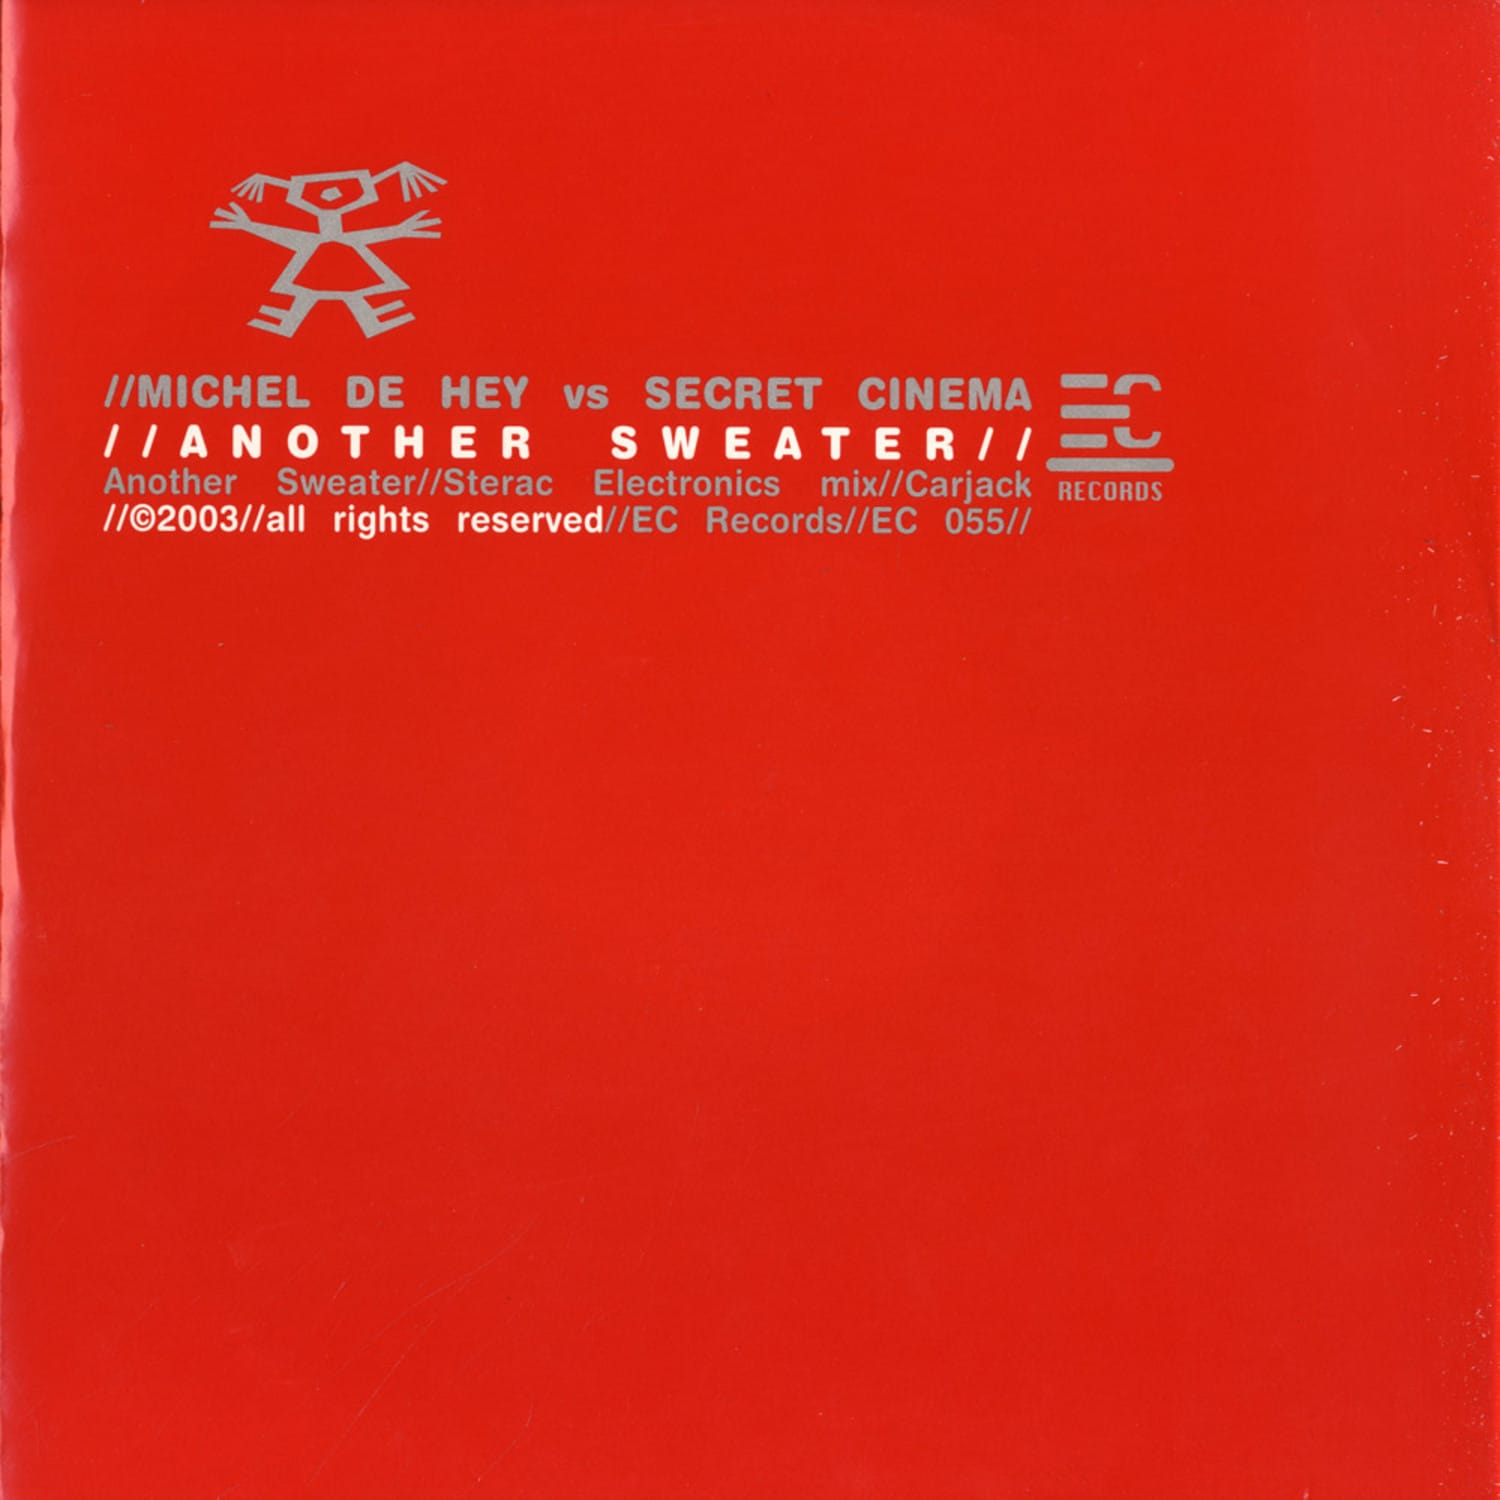 Michel de Hey vs Secret Cinema - ANOTHER SWEATER